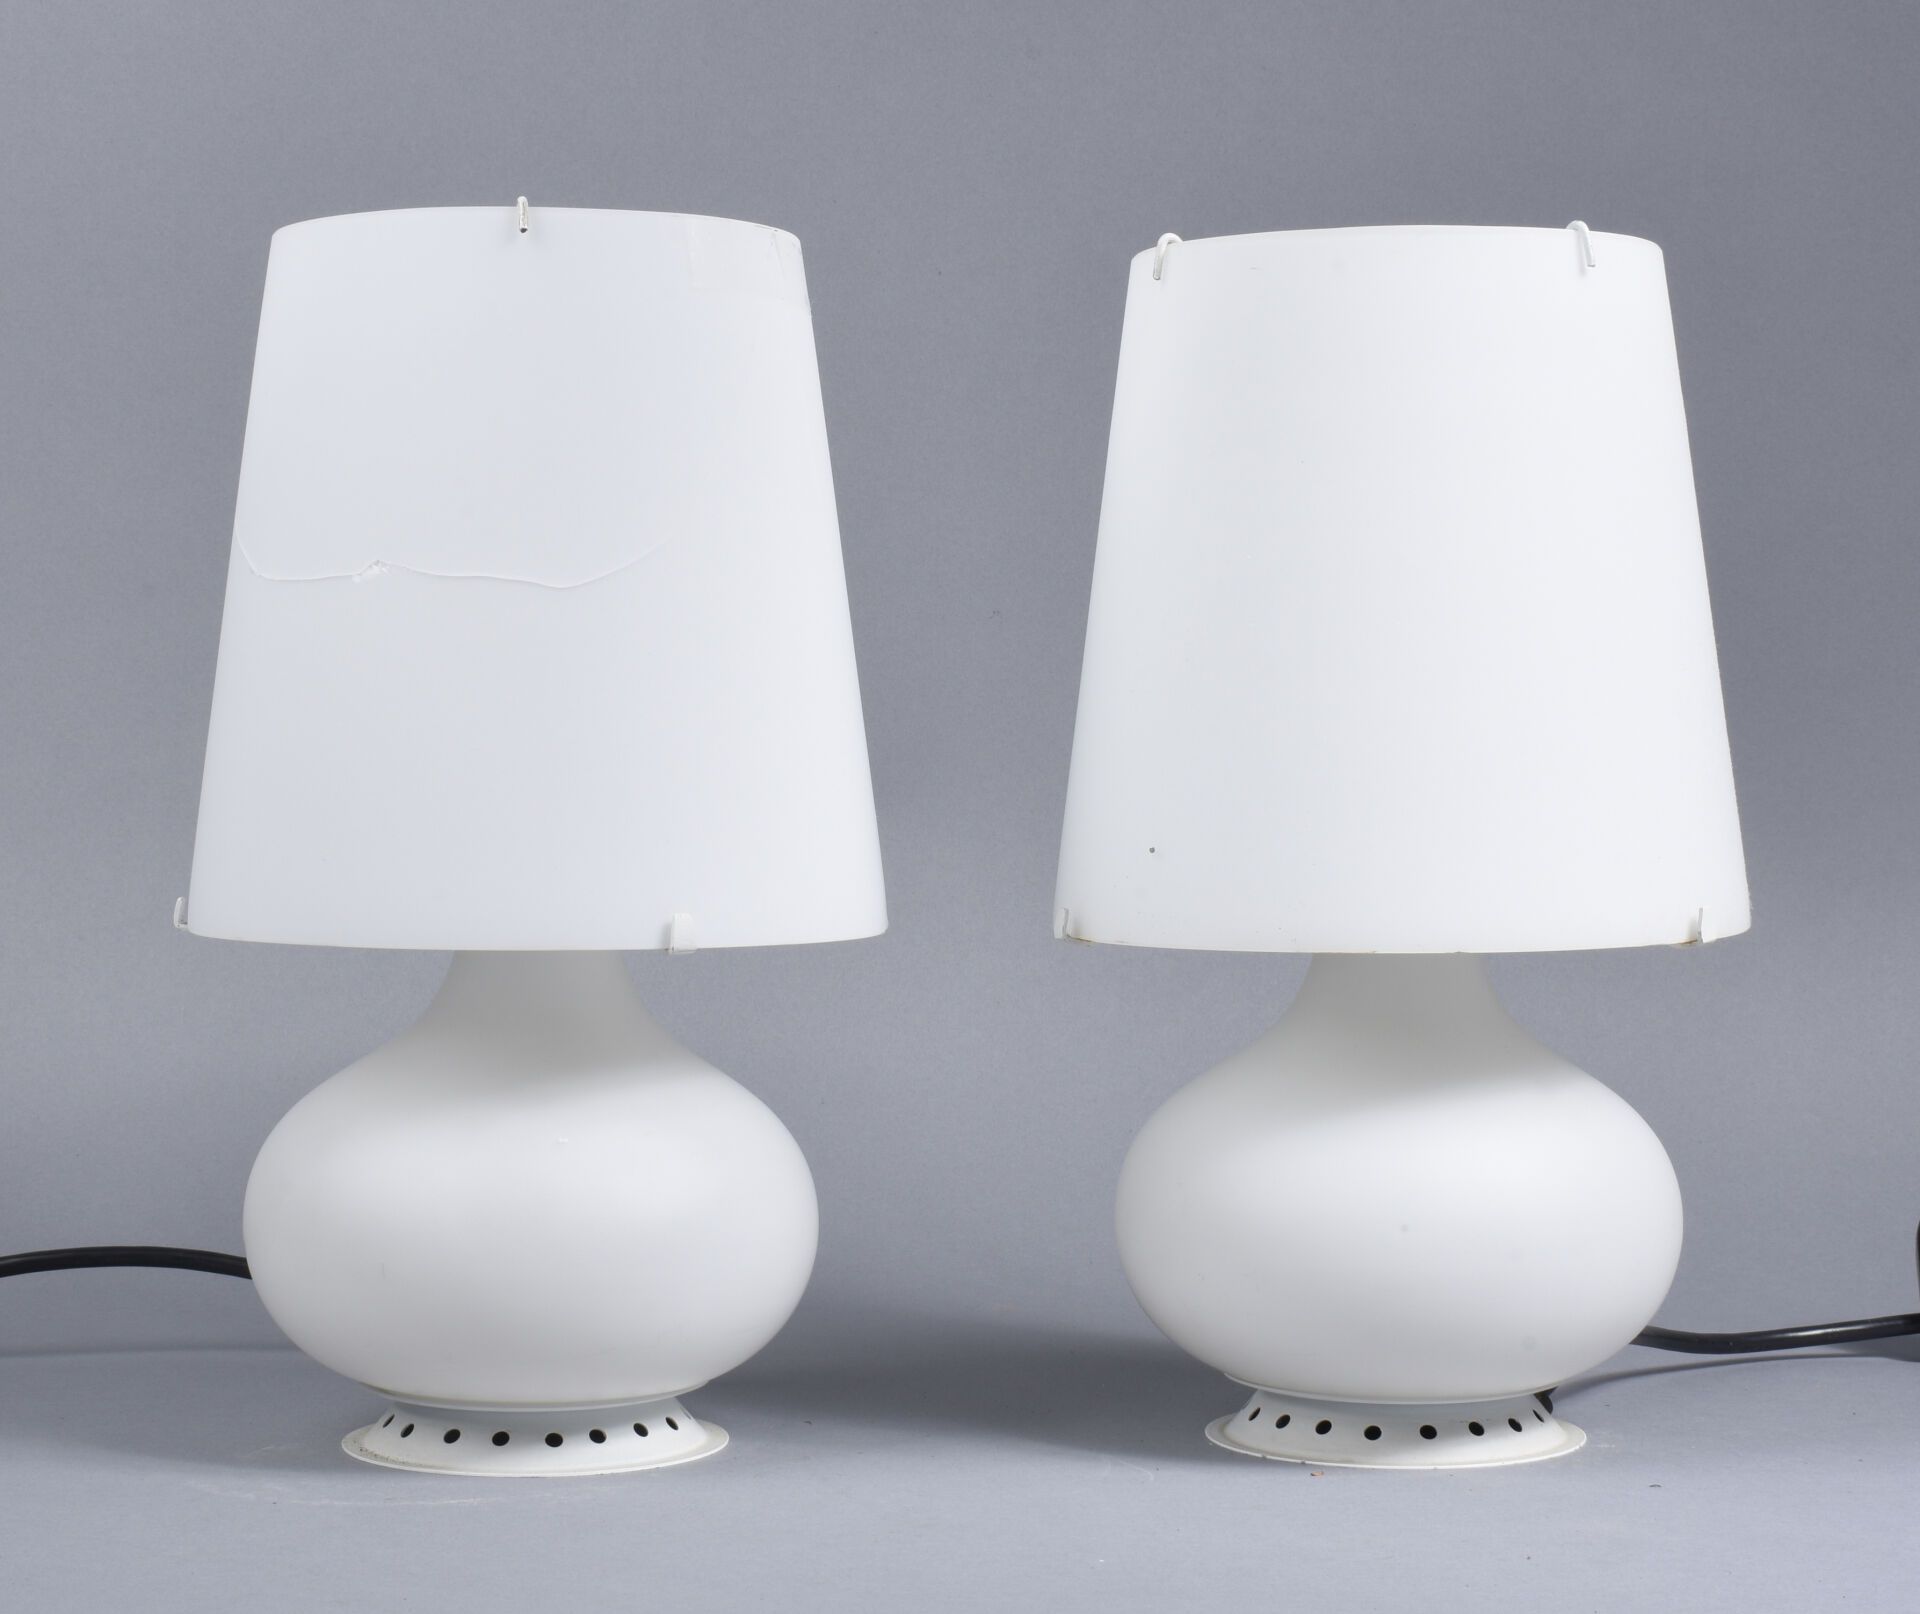 Null 英格兰德-马克斯（1908-1969 年） - 方塔纳艺术出版社
一对 1853 型 "方塔纳 "灯，灯身呈弧形，白色乳白色磨砂玻璃灯罩呈截锥形，圆形&hellip;